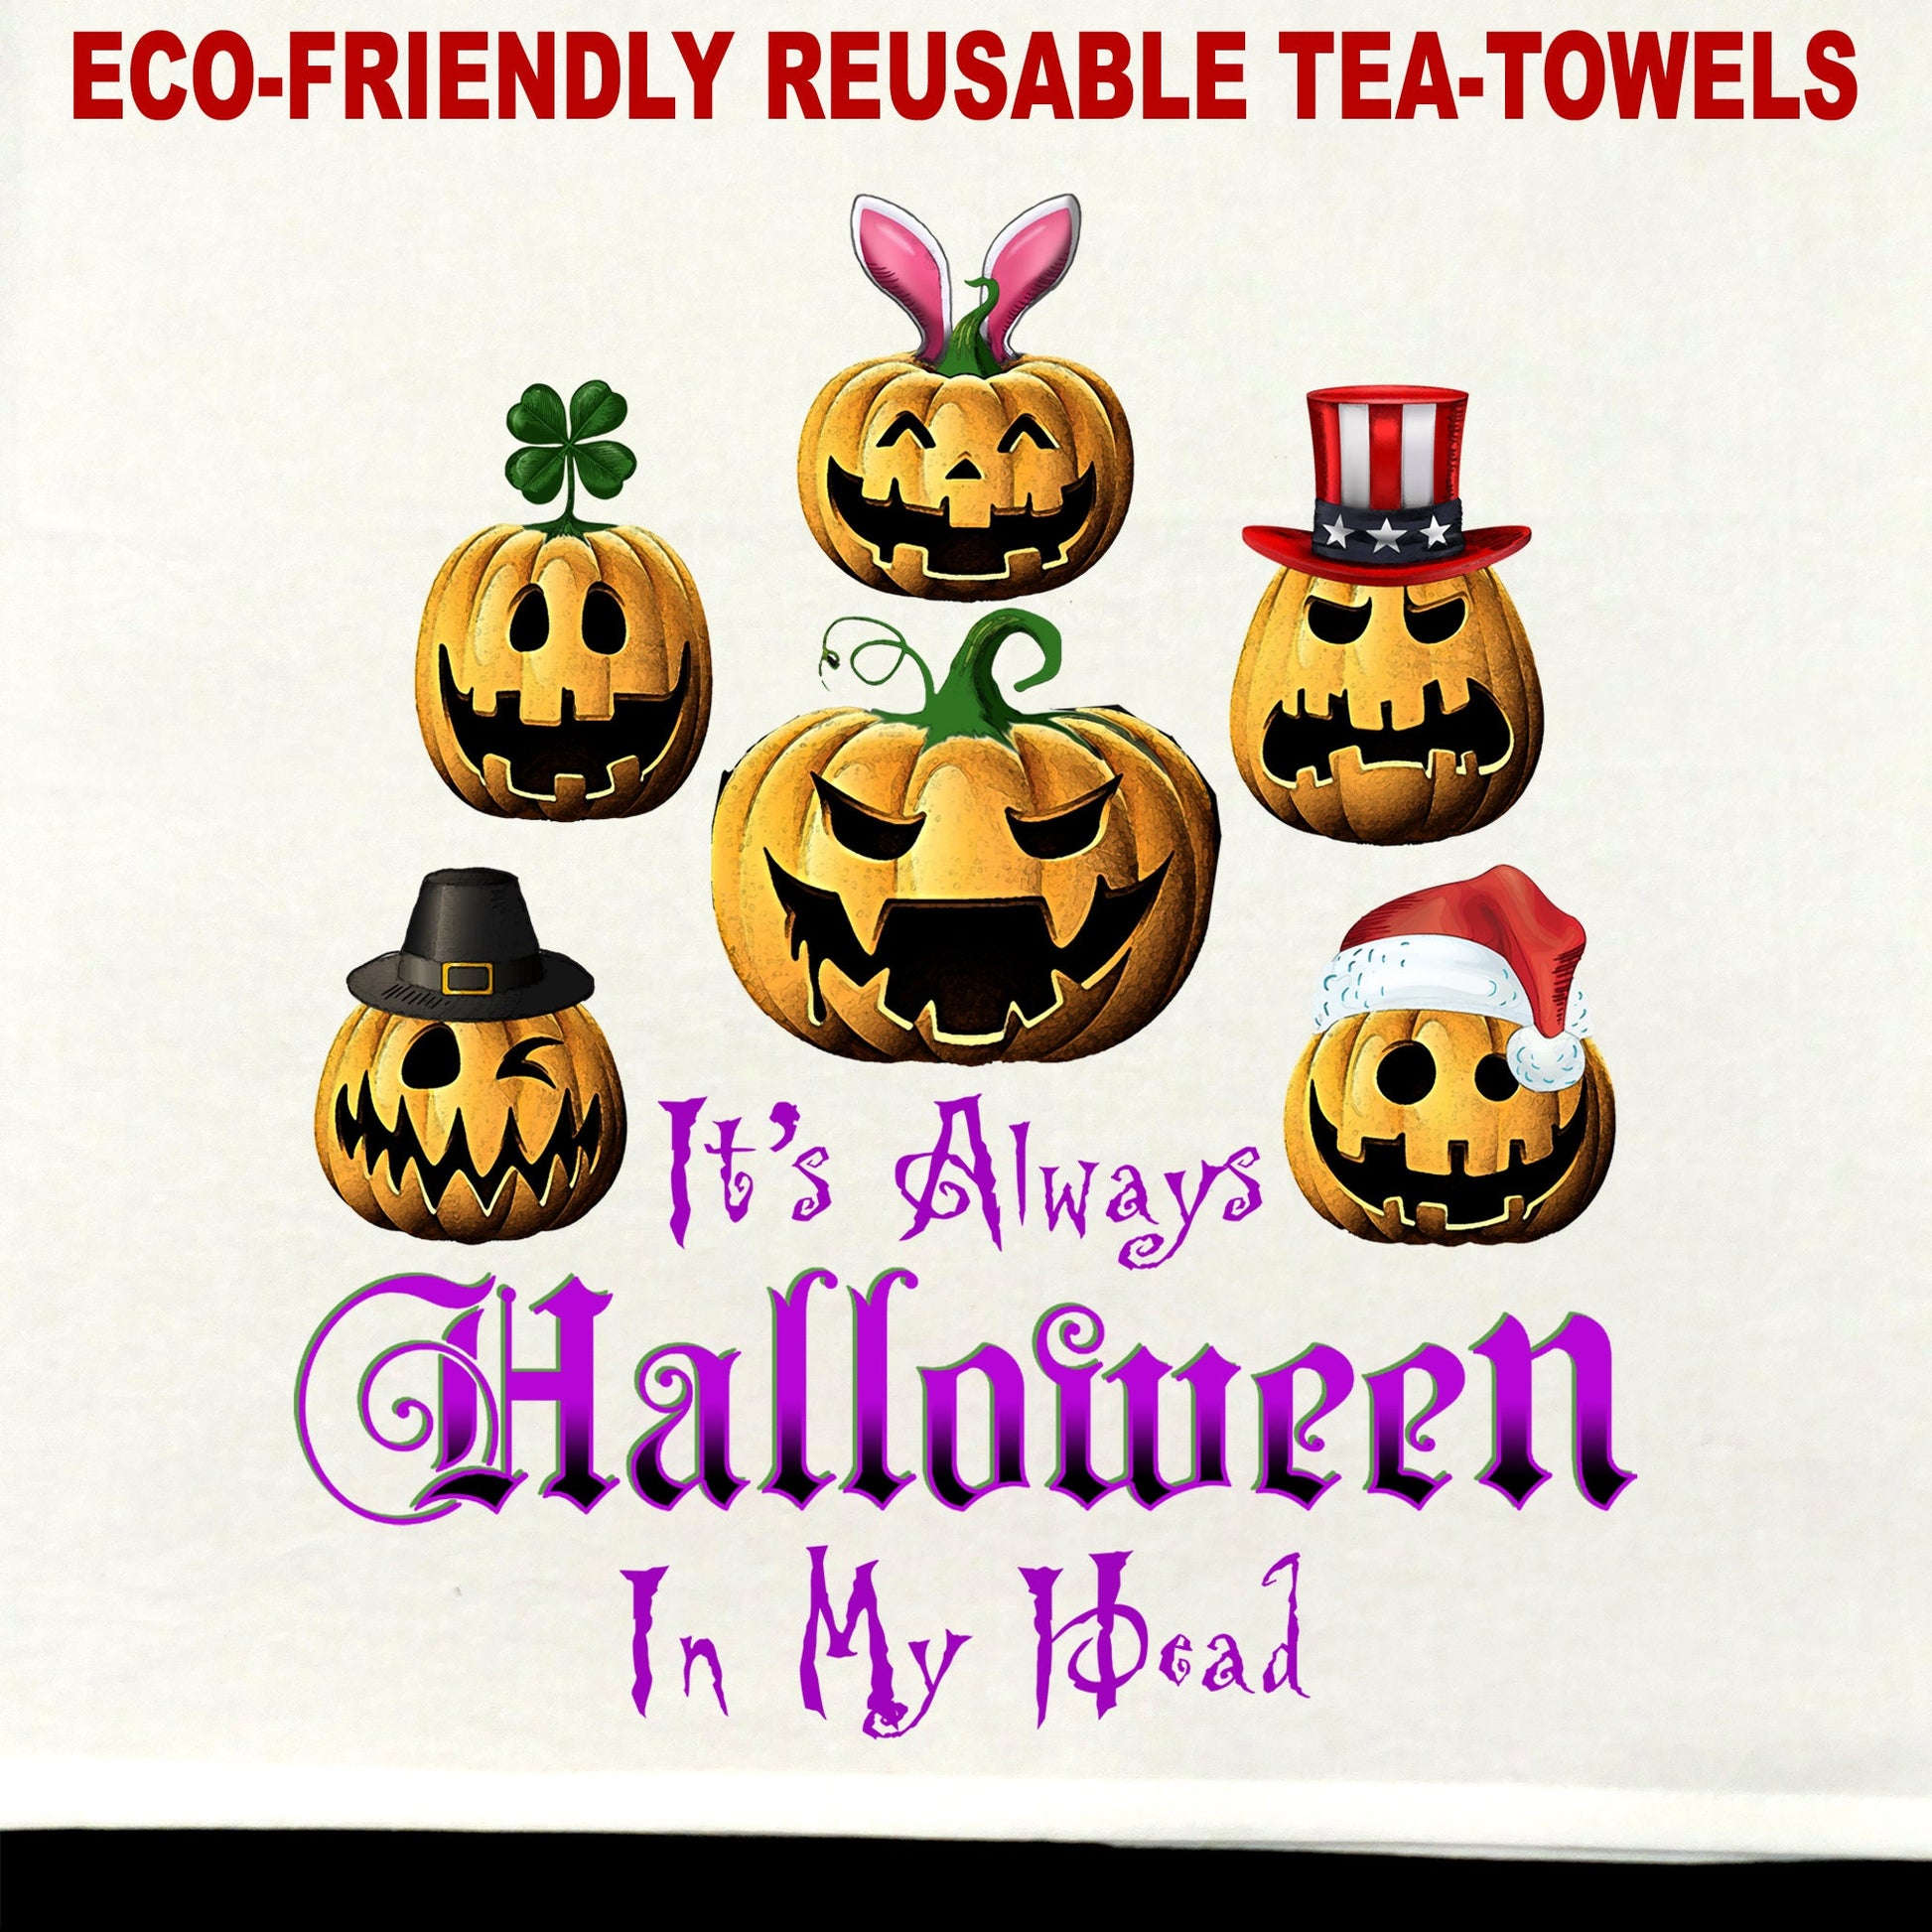 It's Always Halloween in my Head Tea Towel / tea towel / dish towel / hand towel / reusable wipe / kitchen gift / kitchen deco